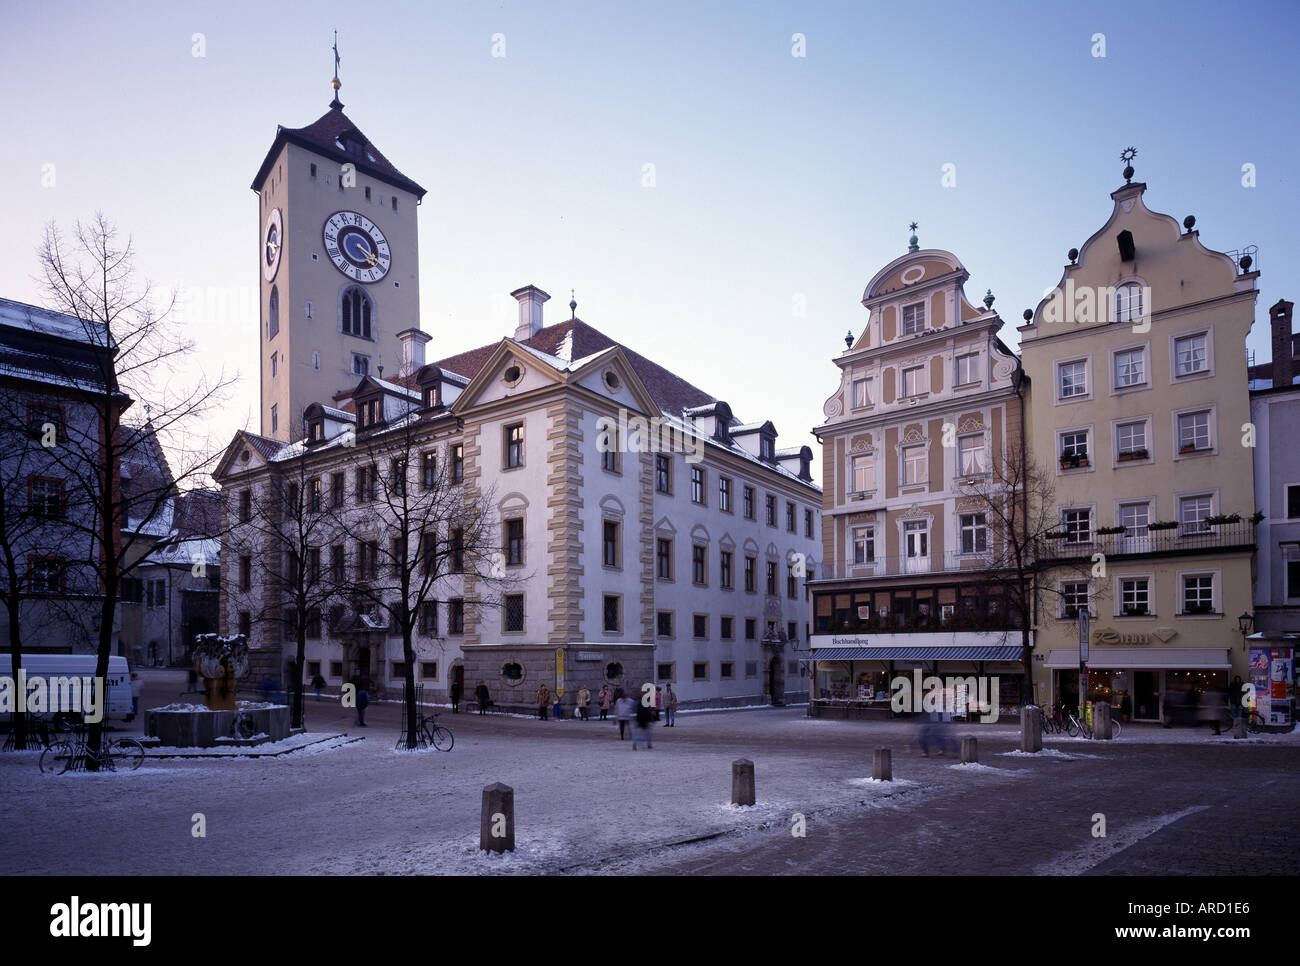 Regensburg, Kohlenmarkt und Rathaus, Stock Photo